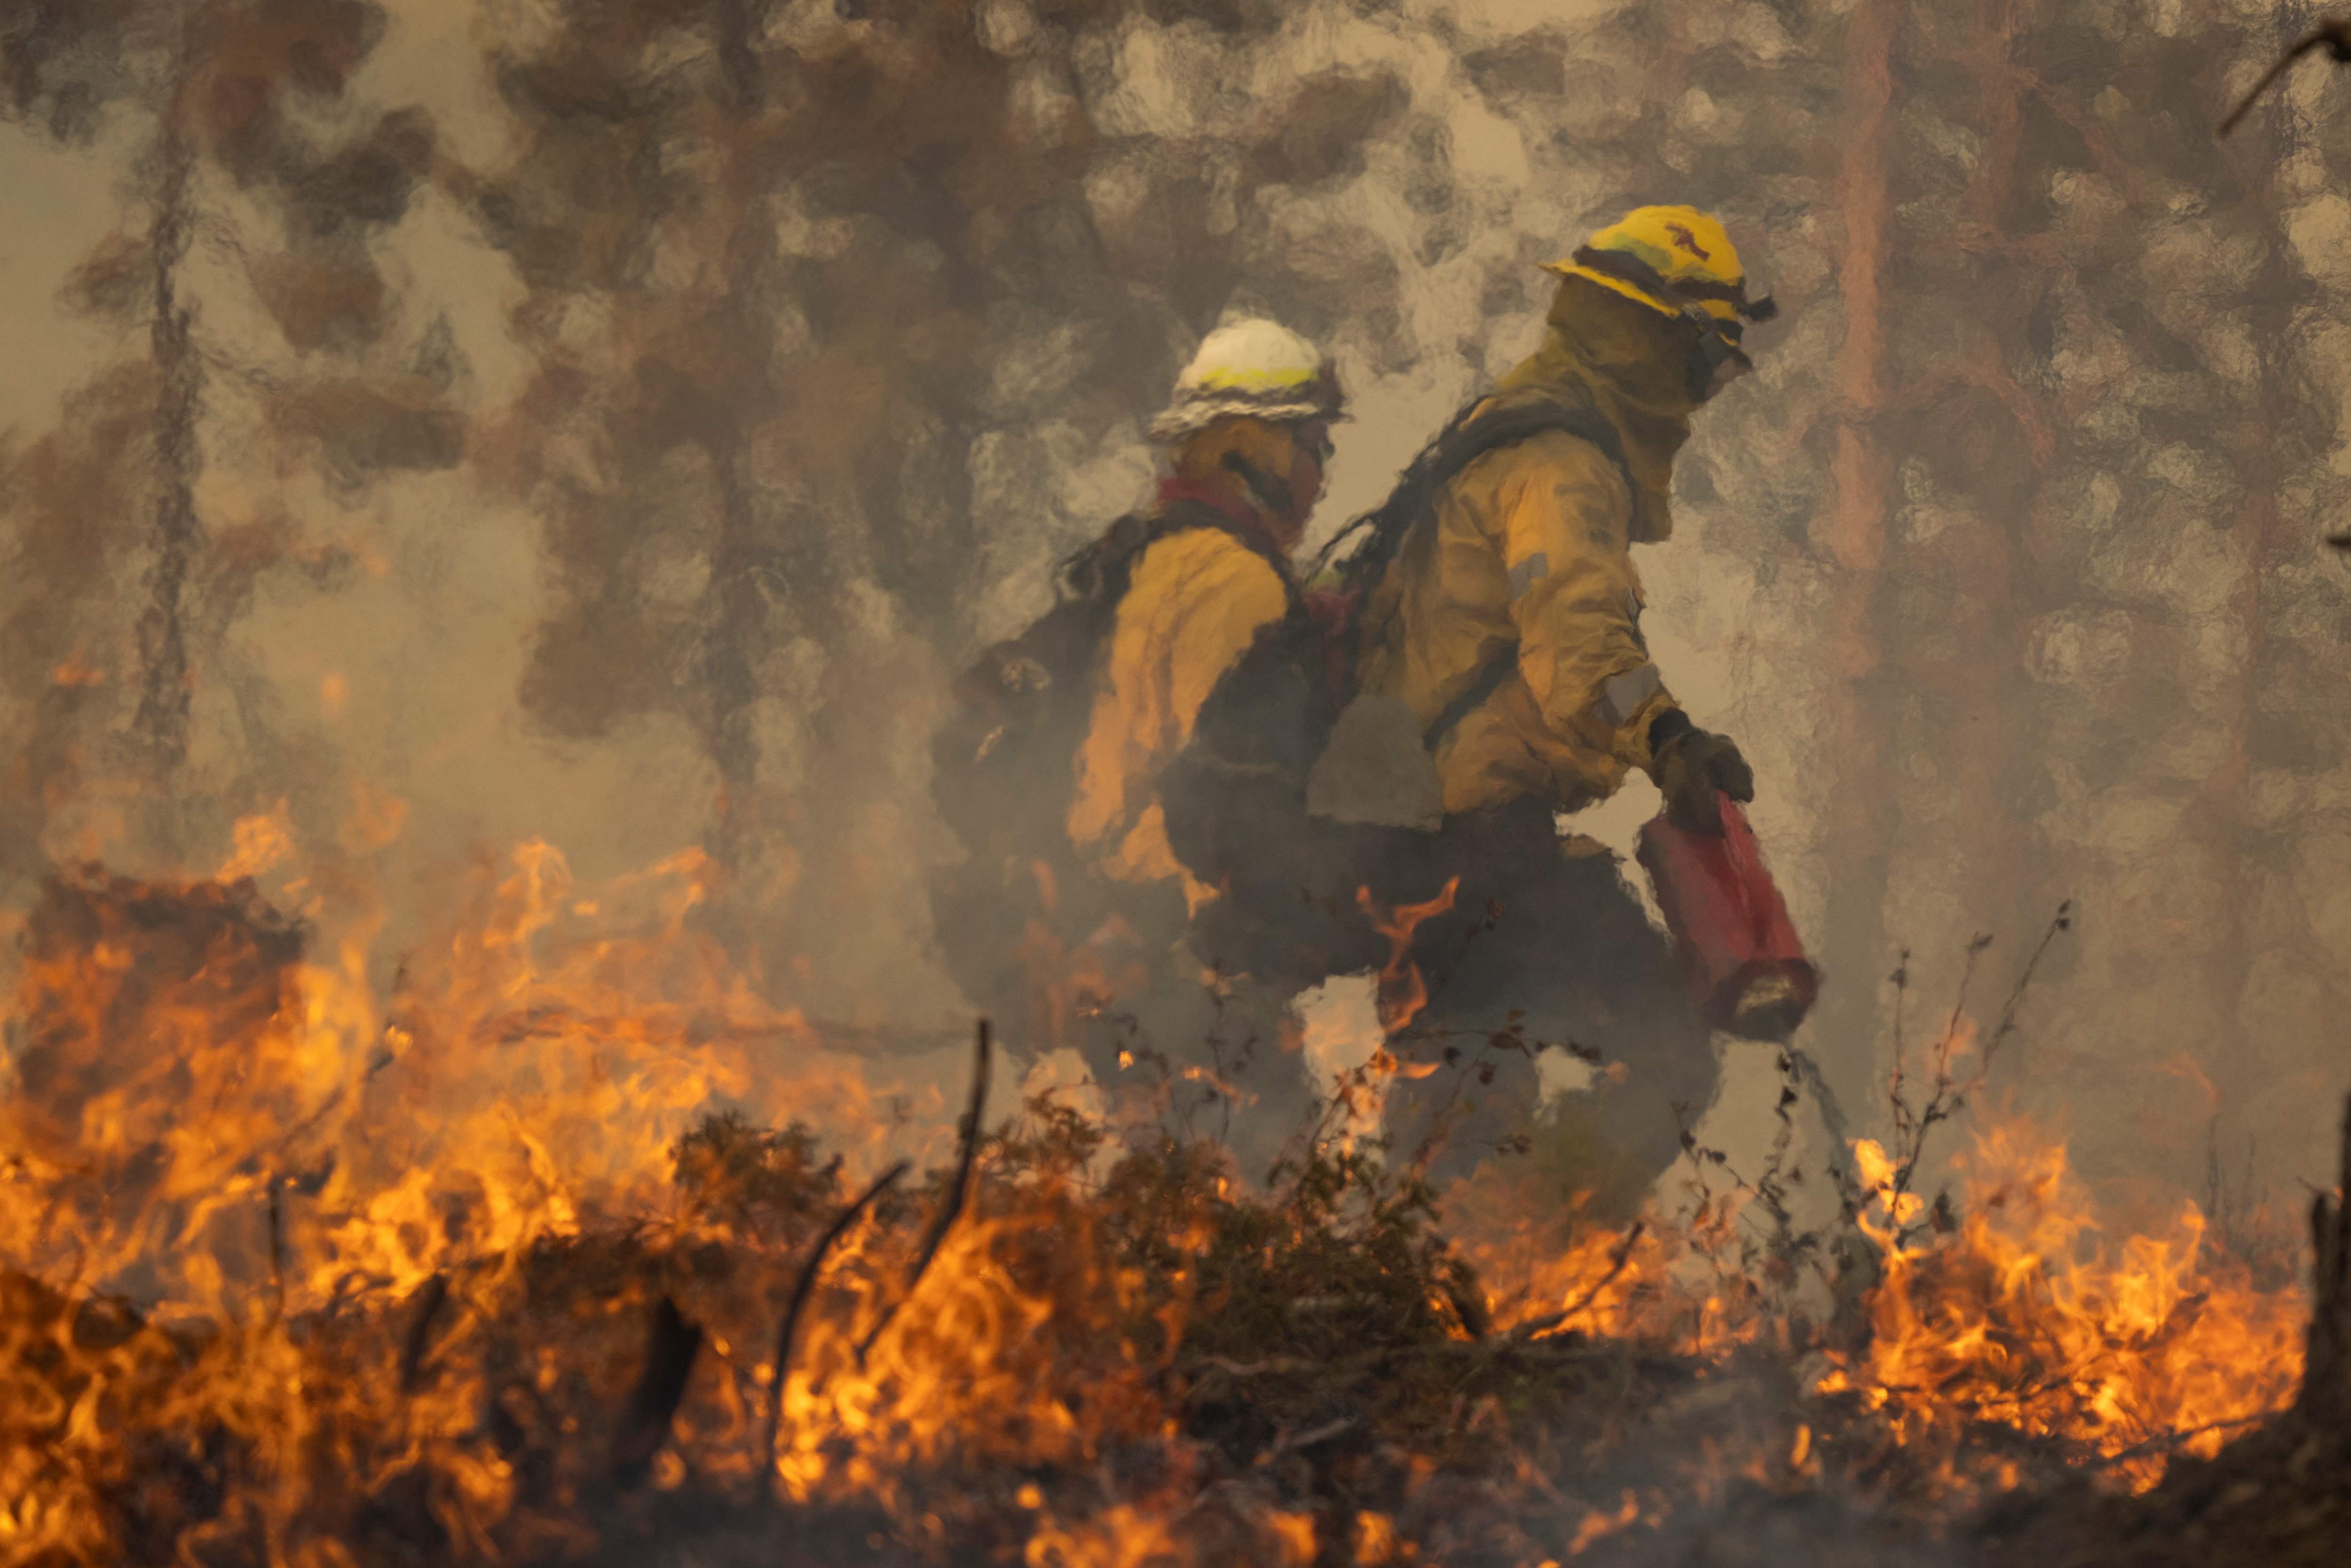 Incendio atrapa a campistas en bosque nacional en California - Primera Hora